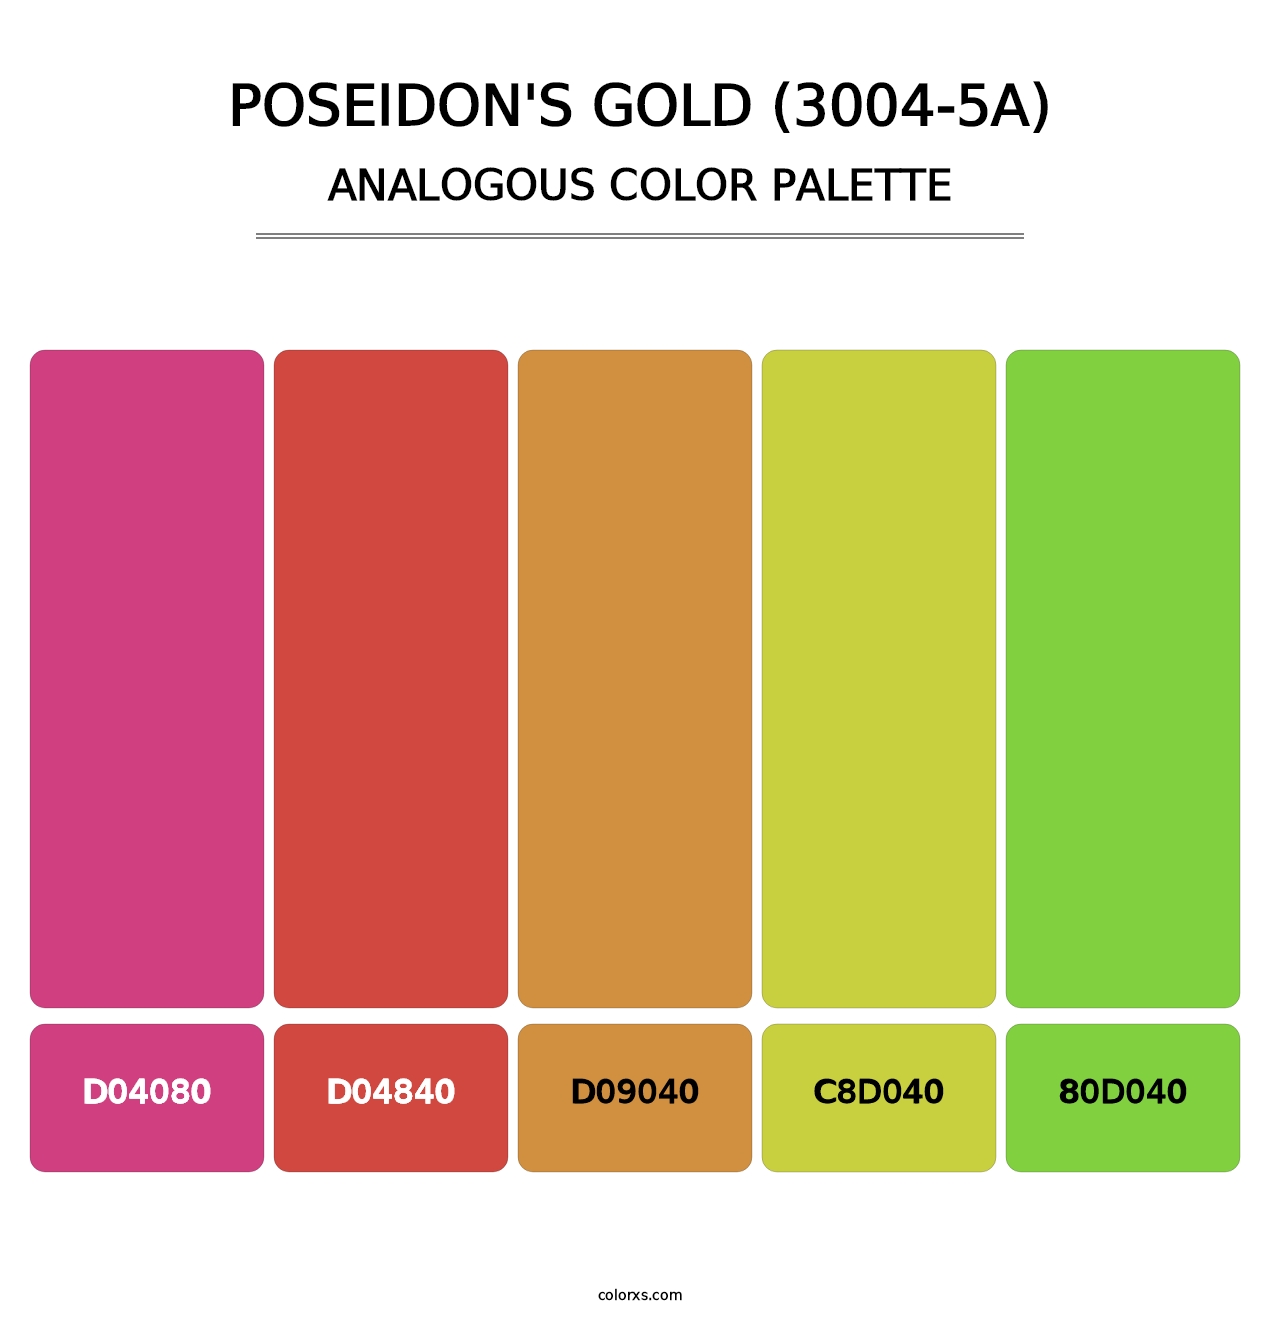 Poseidon's Gold (3004-5A) - Analogous Color Palette